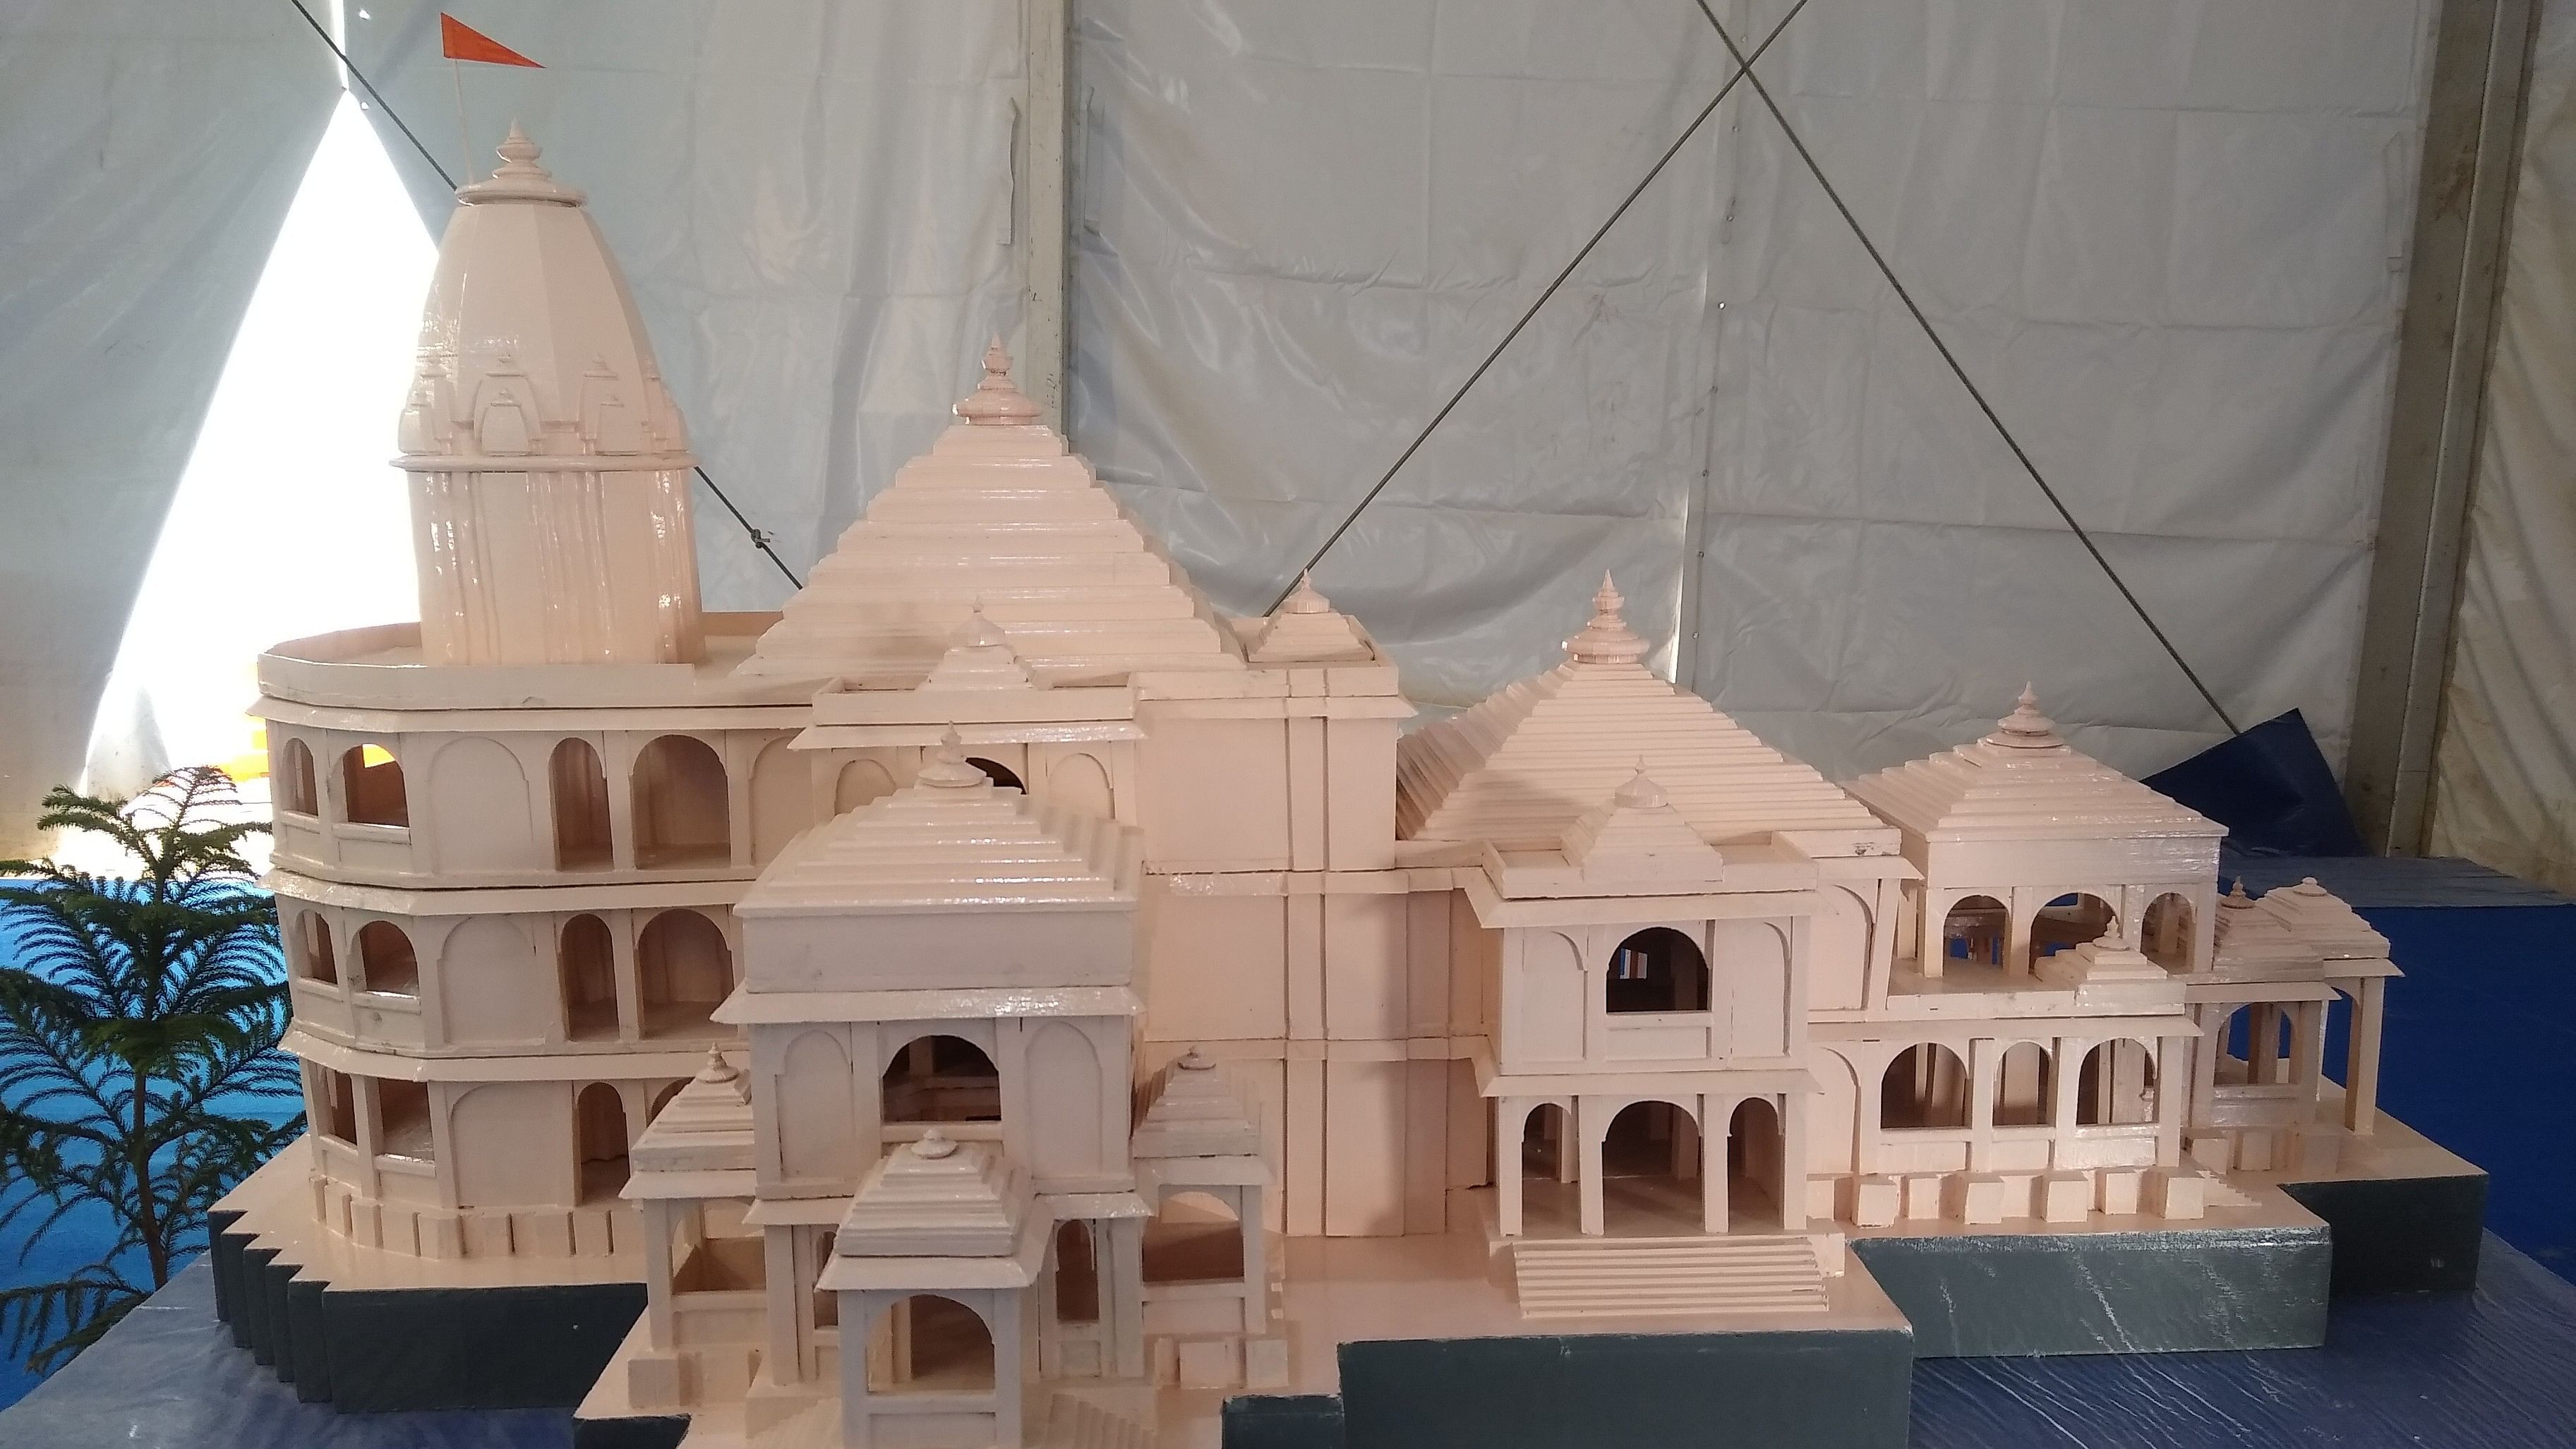 <div class="paragraphs"><p>Ram Temple models at CSIR pavilion.</p></div>